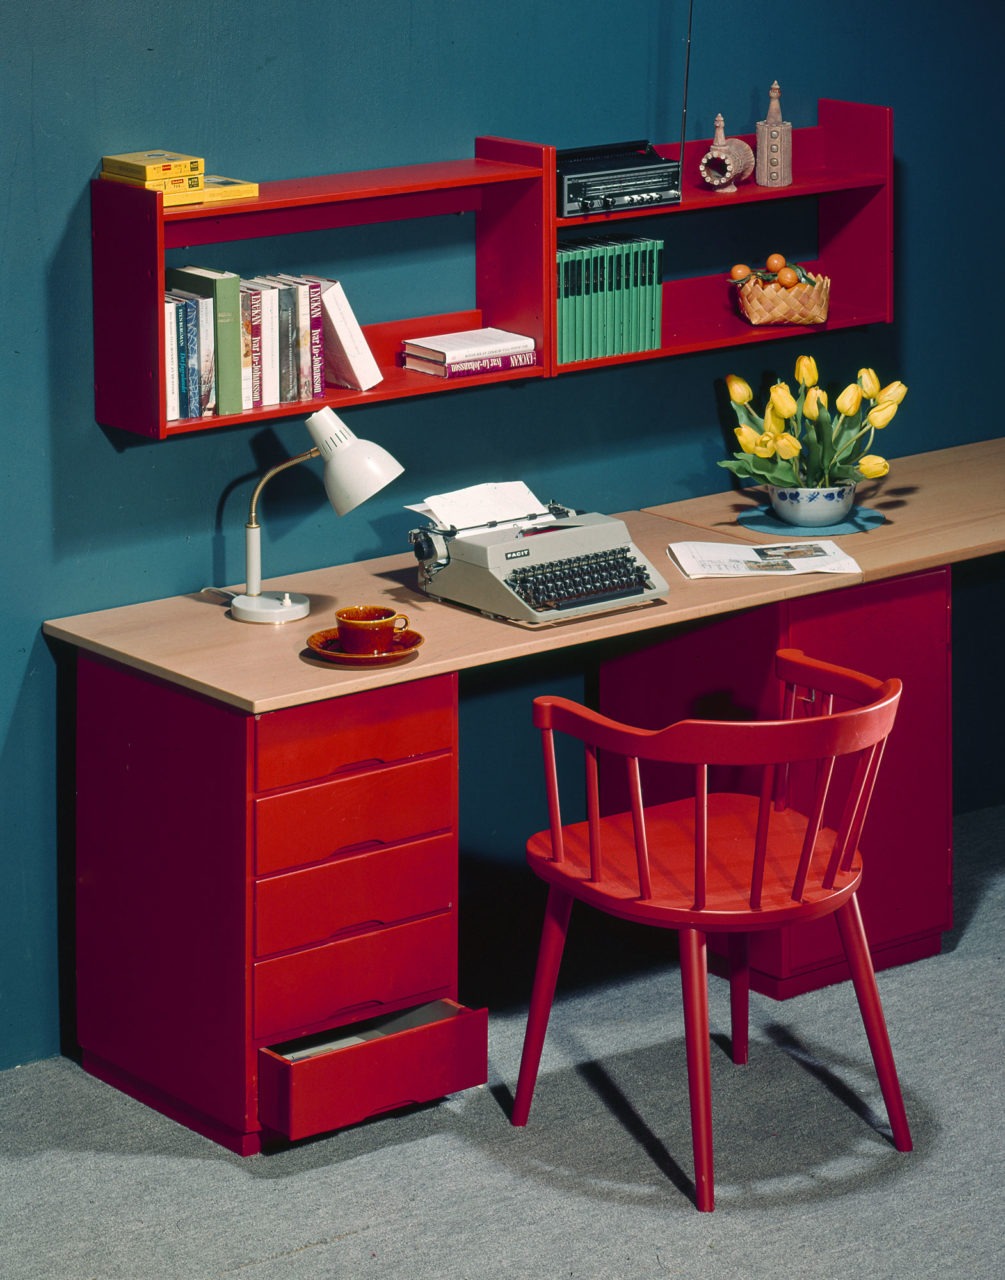 Escritorio con encimera de madera clara y detalles en rojo: estanterías, cajoneras y silla con respaldo de listones.